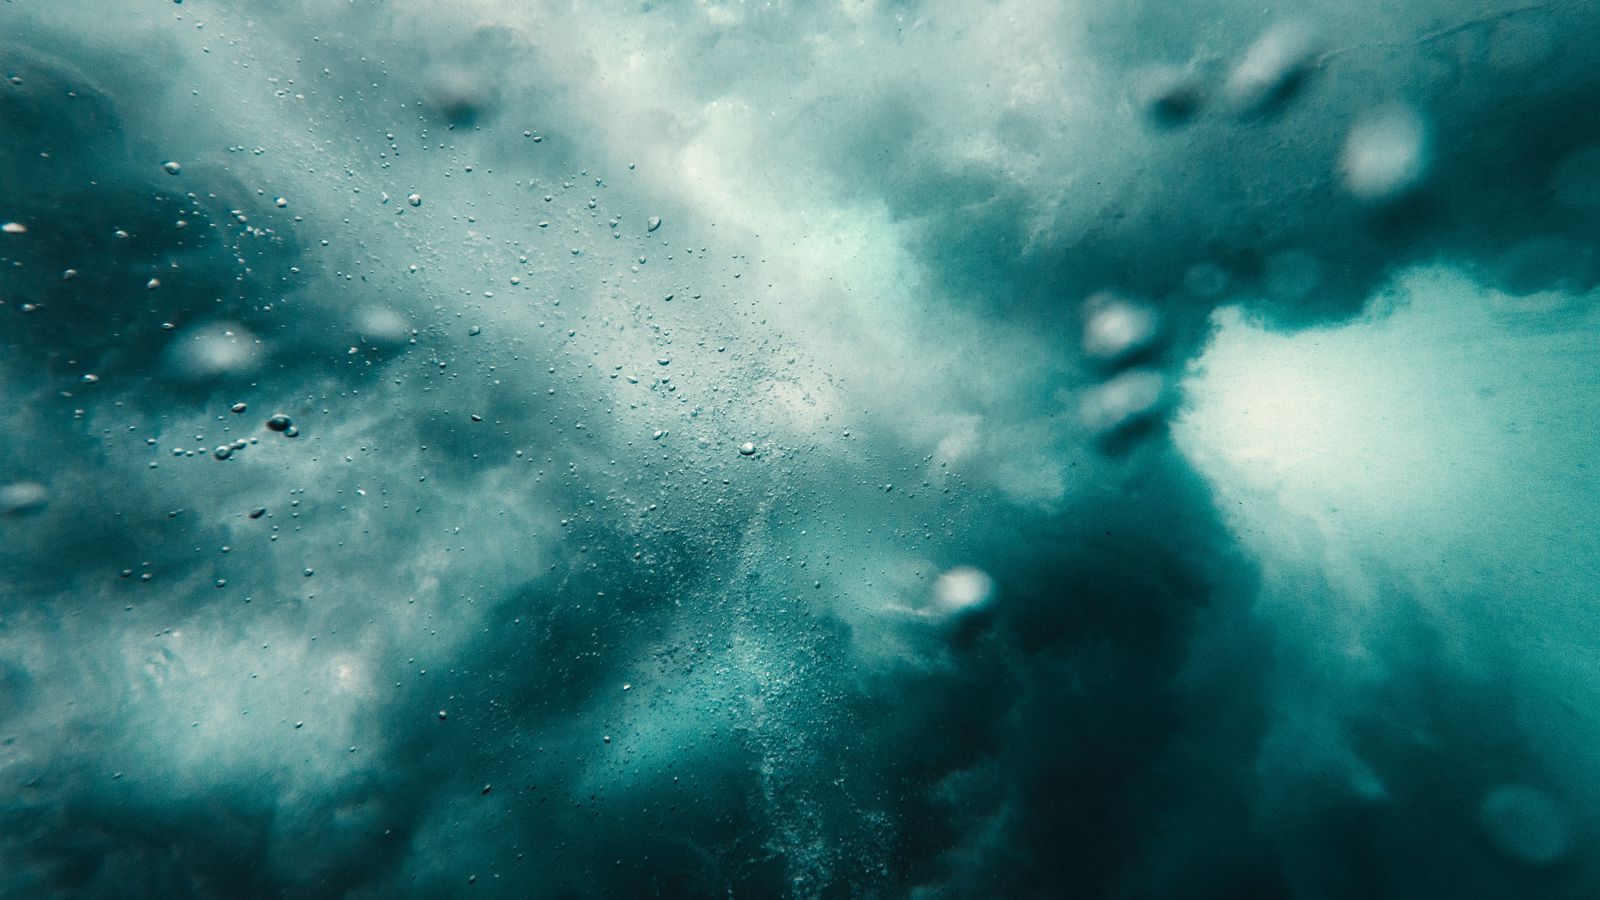 Mar agitado com bolhas